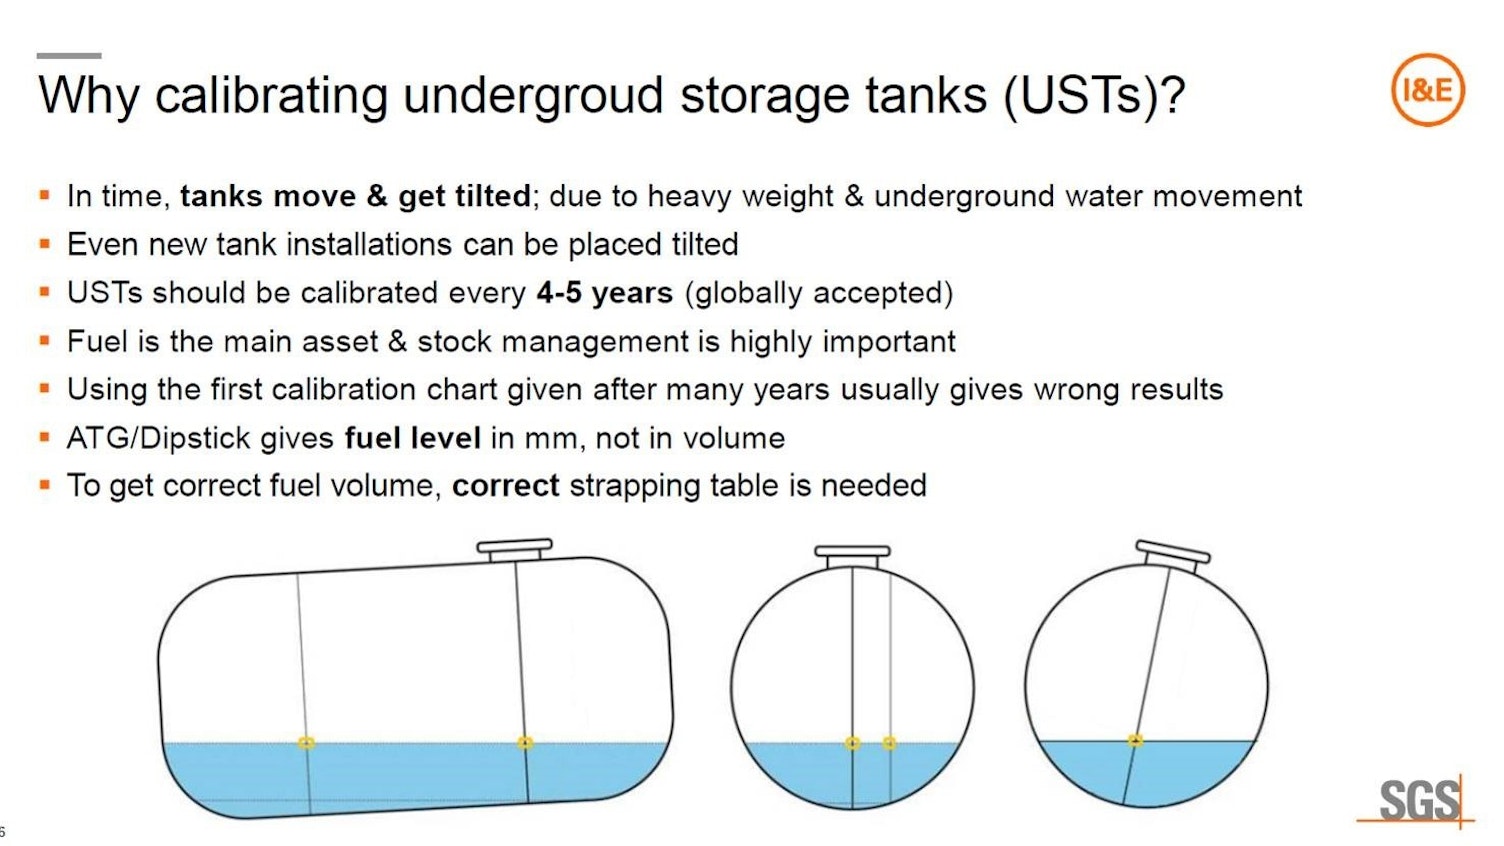 Why Calibrating Underground Storage Tanks